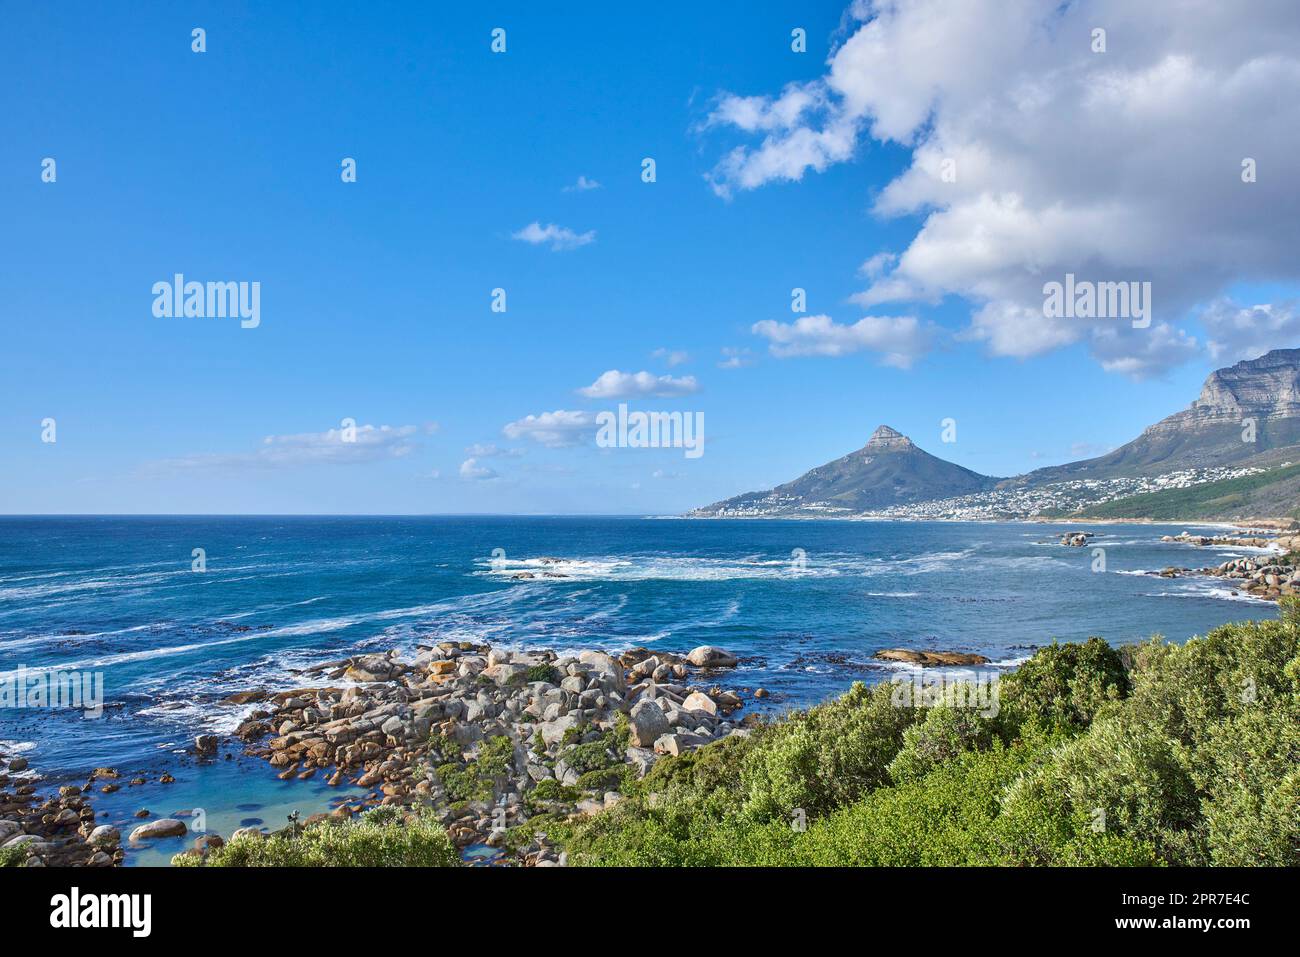 Uno scenario naturale di un mare calmo e cespugli verdi, con la montagna Lions Head all'orizzonte, città del Capo, Sudafrica. Paesaggio dell'oceano vicino alle montagne con cielo nuvoloso blu e spazio copia. Foto Stock